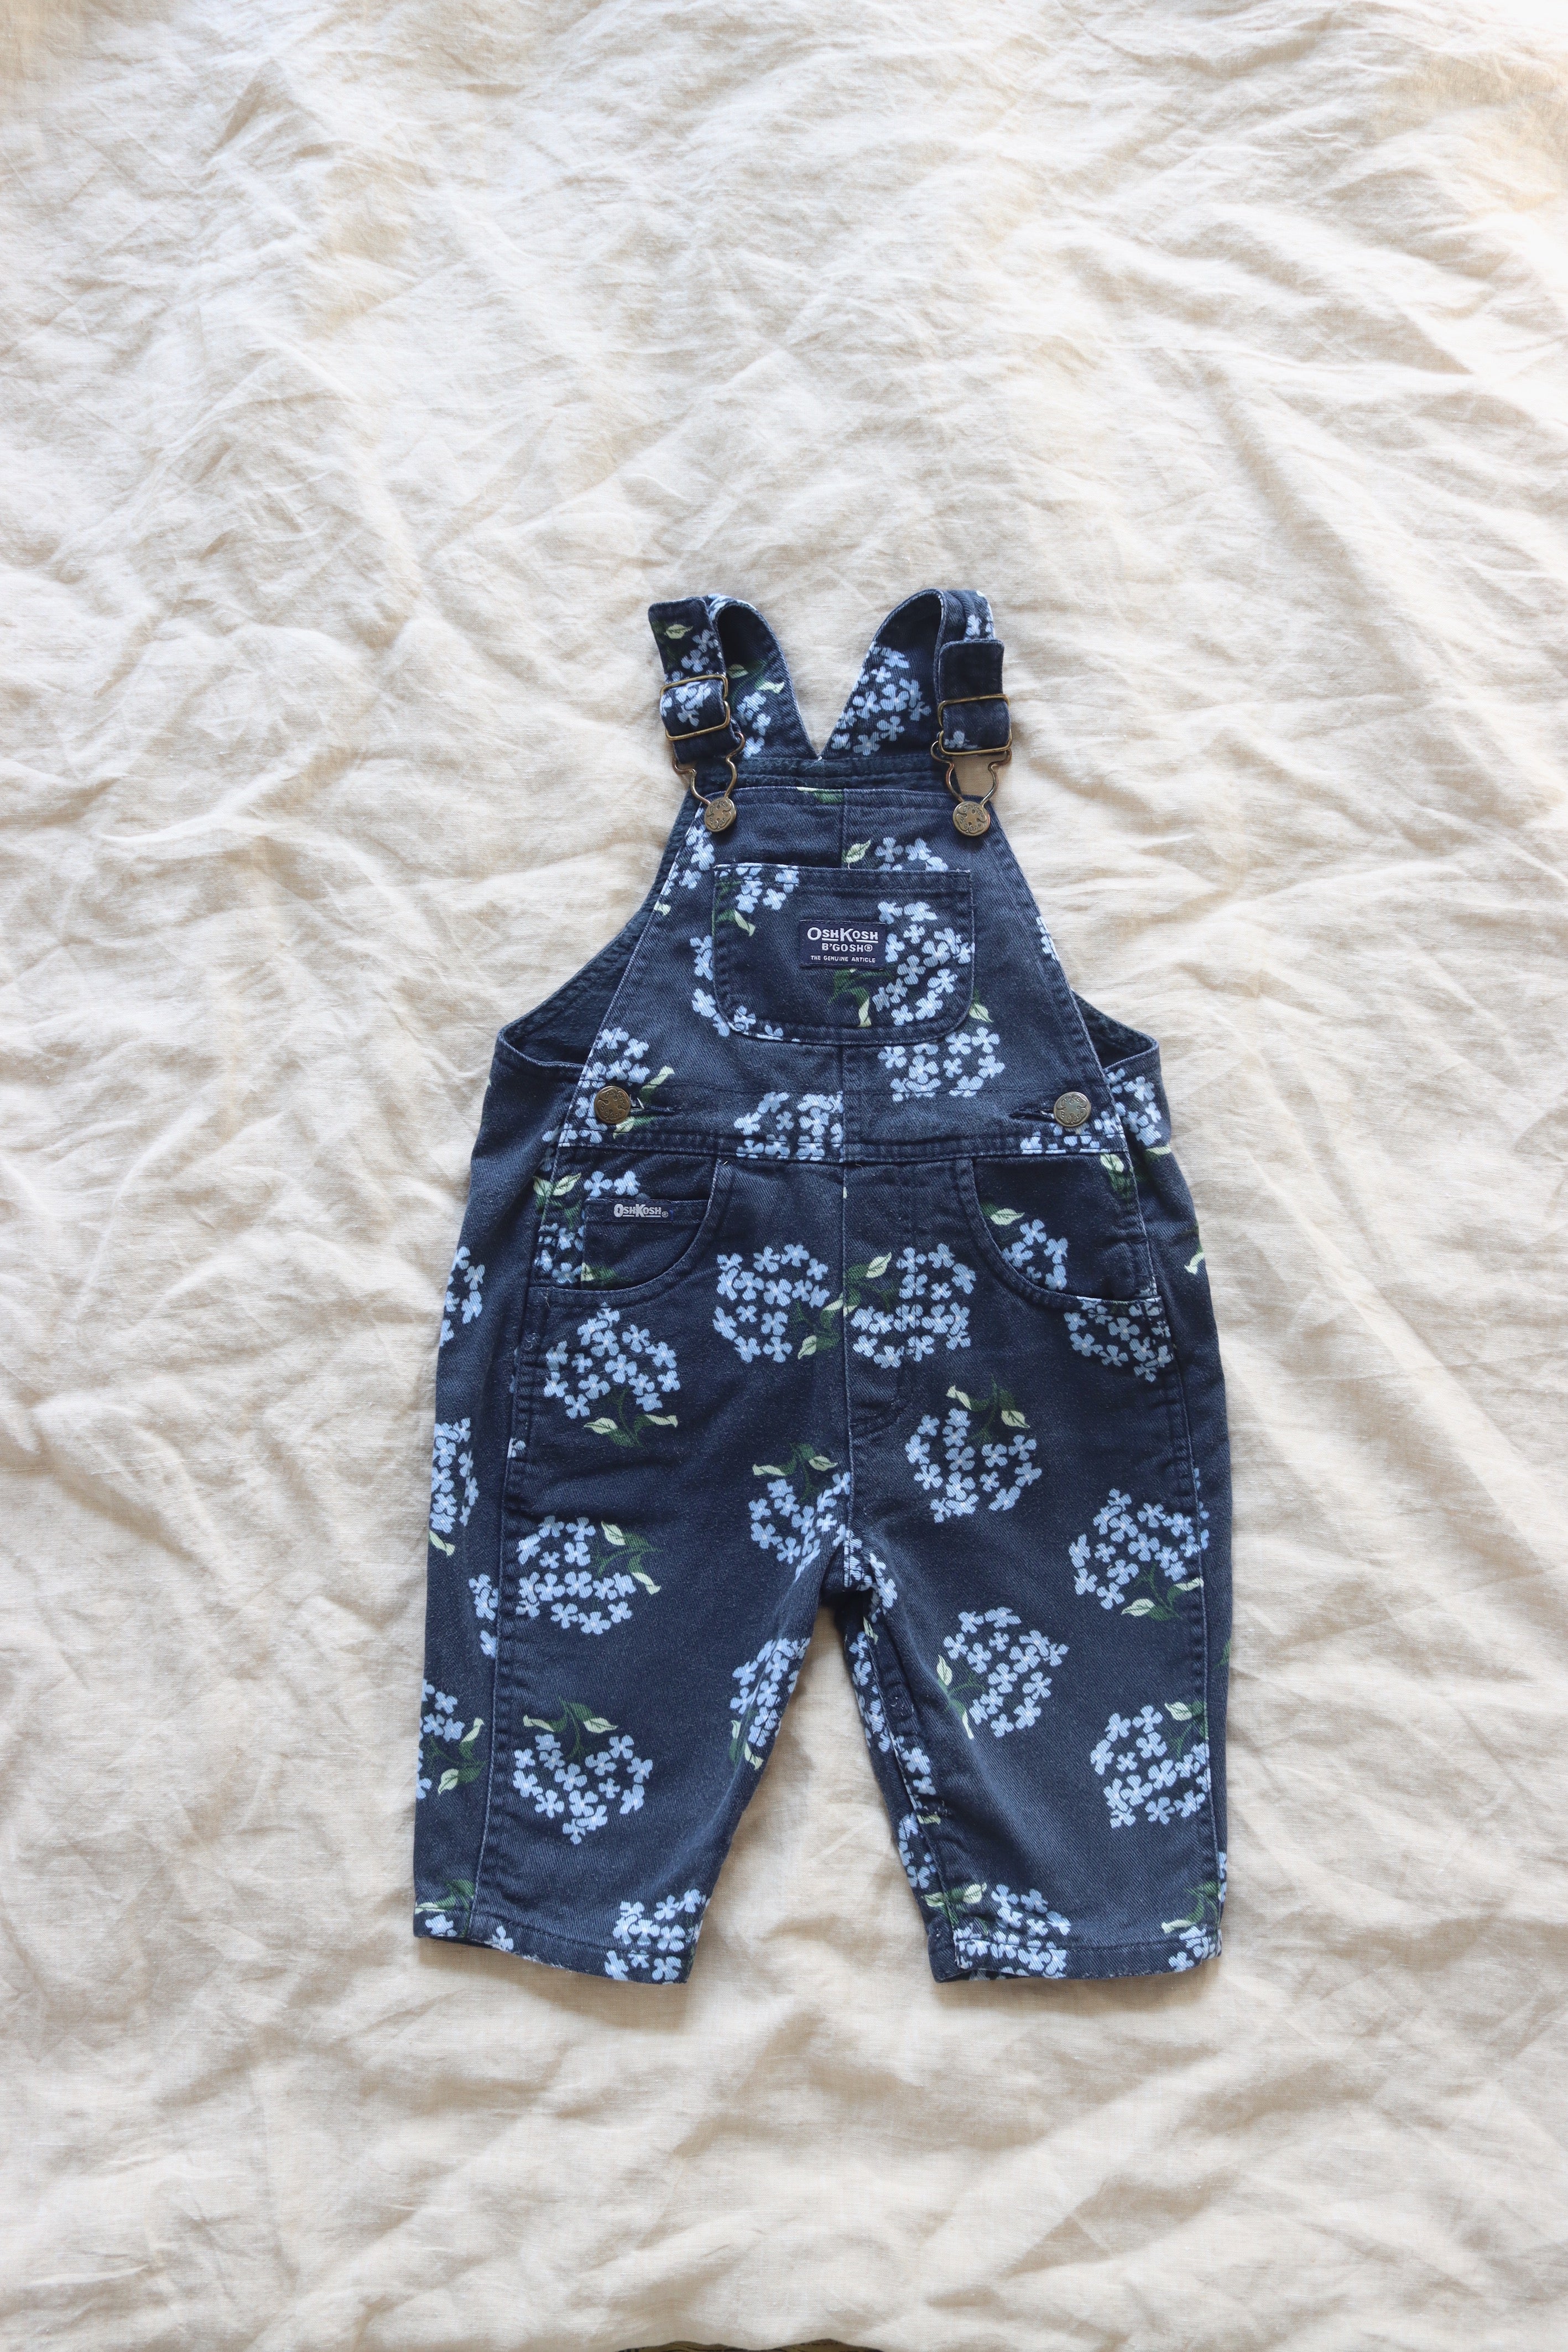 Vintage blue floral OshKosh overalls - size 6-12 months